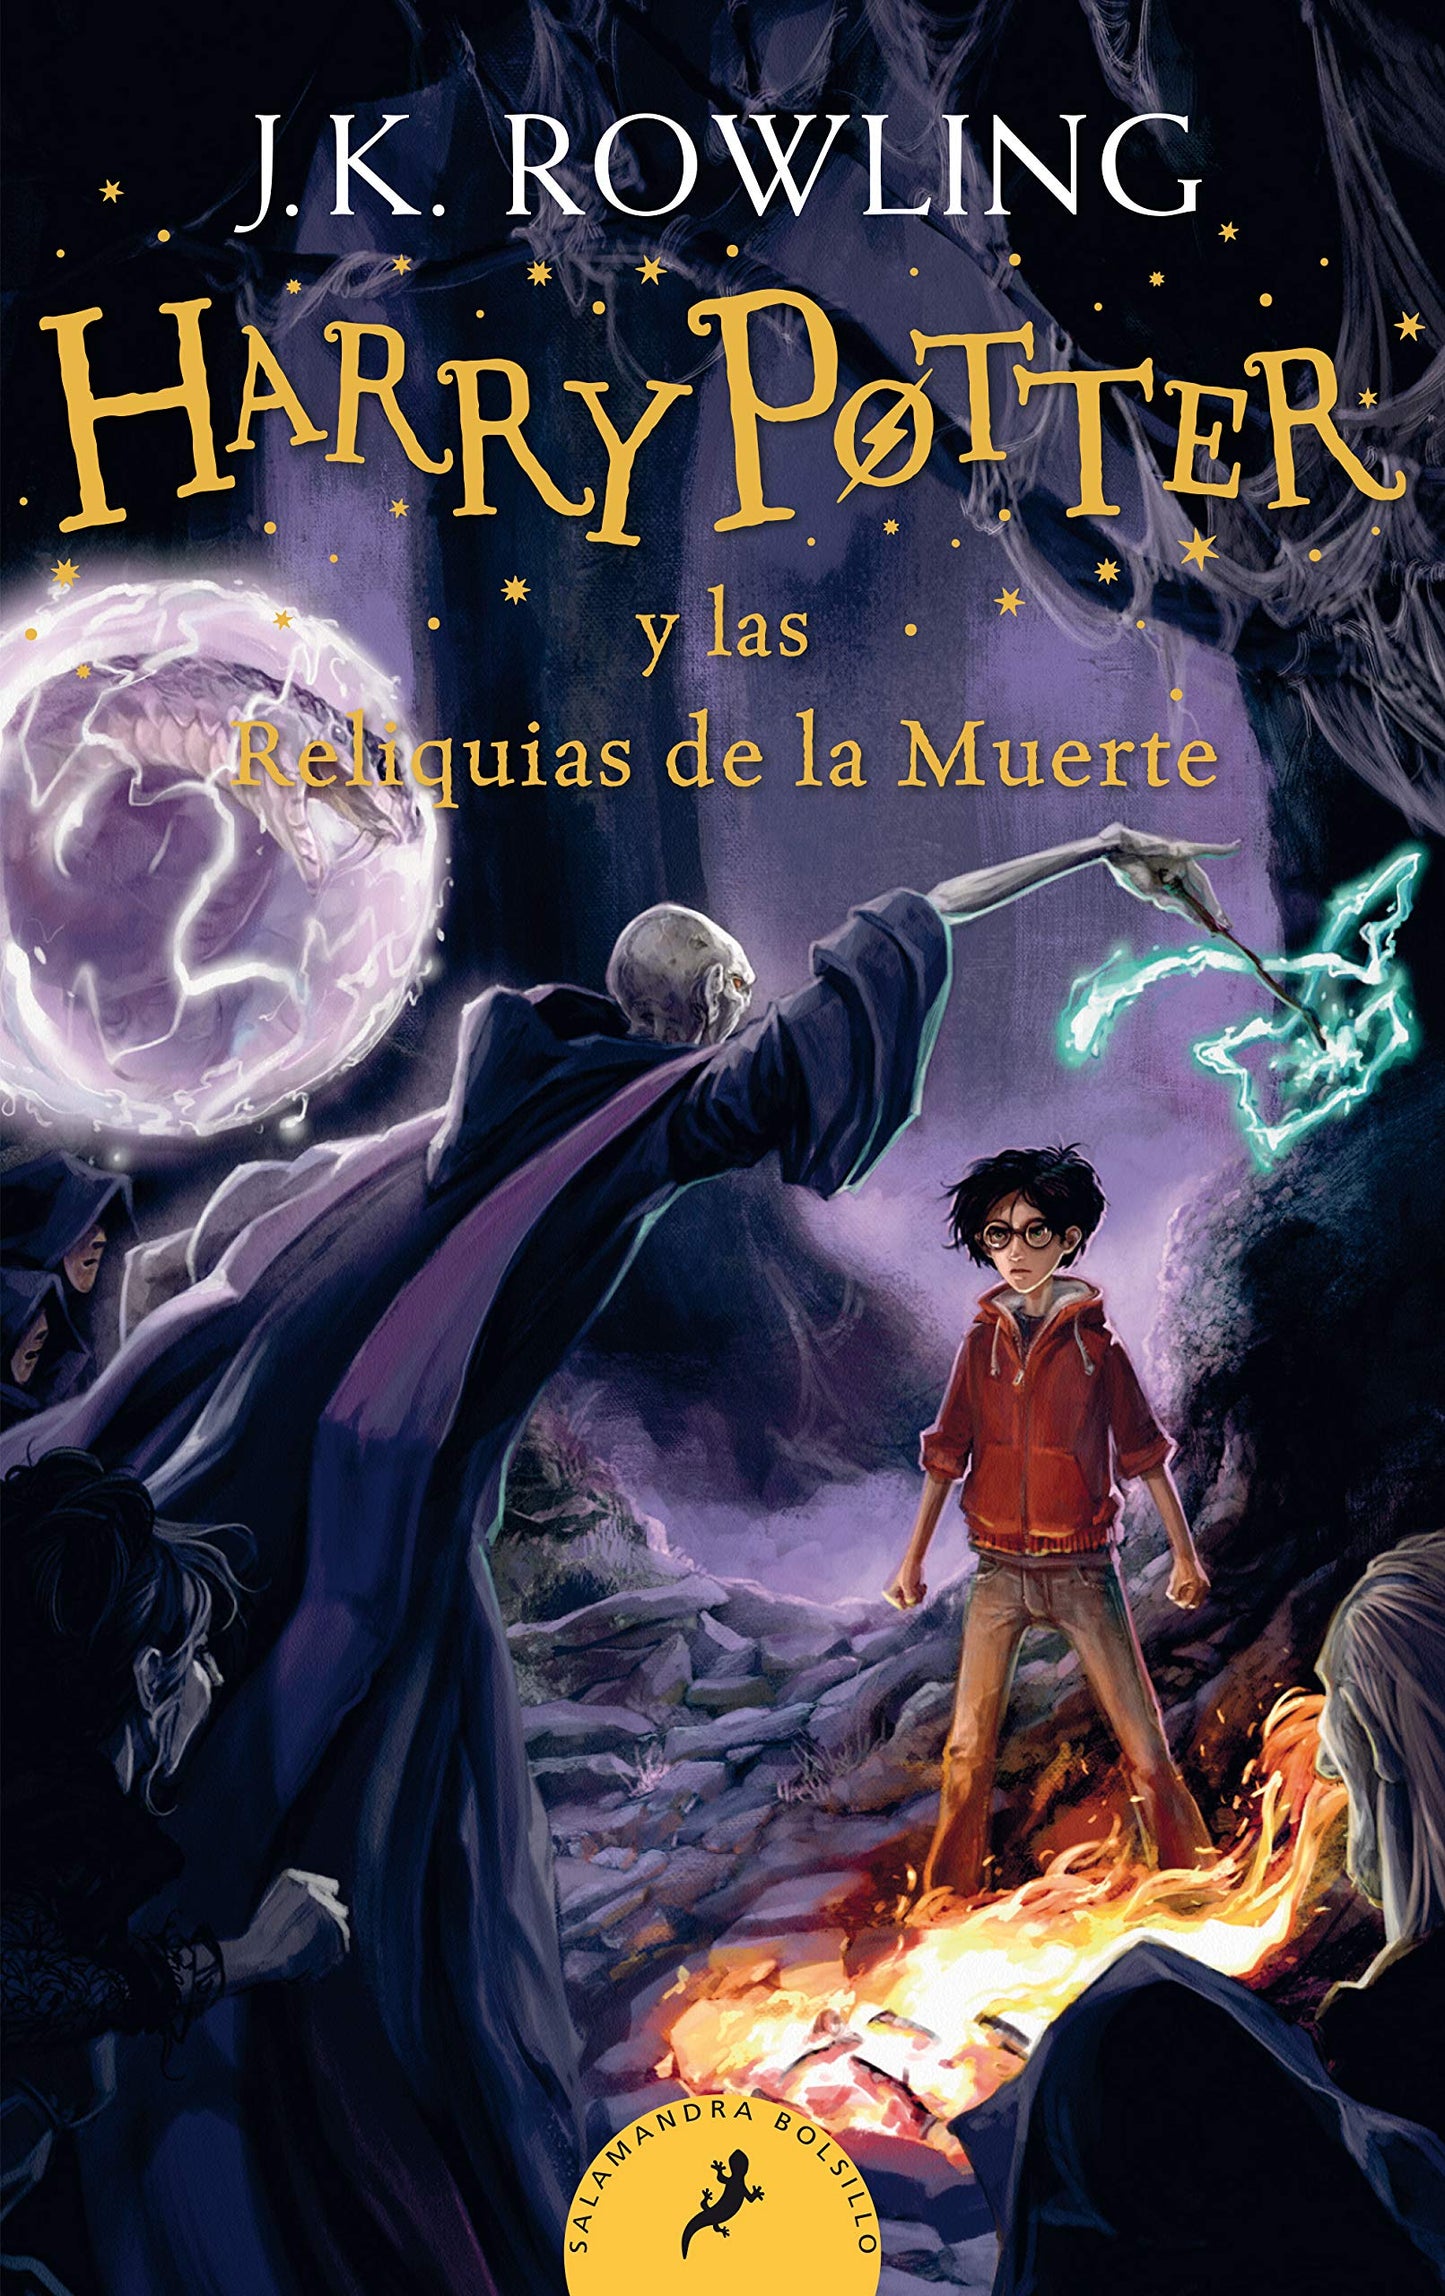 Harry Potter y las reliquias de la muerte - J. K. Rowling (Joanne Kathleen Rowling)